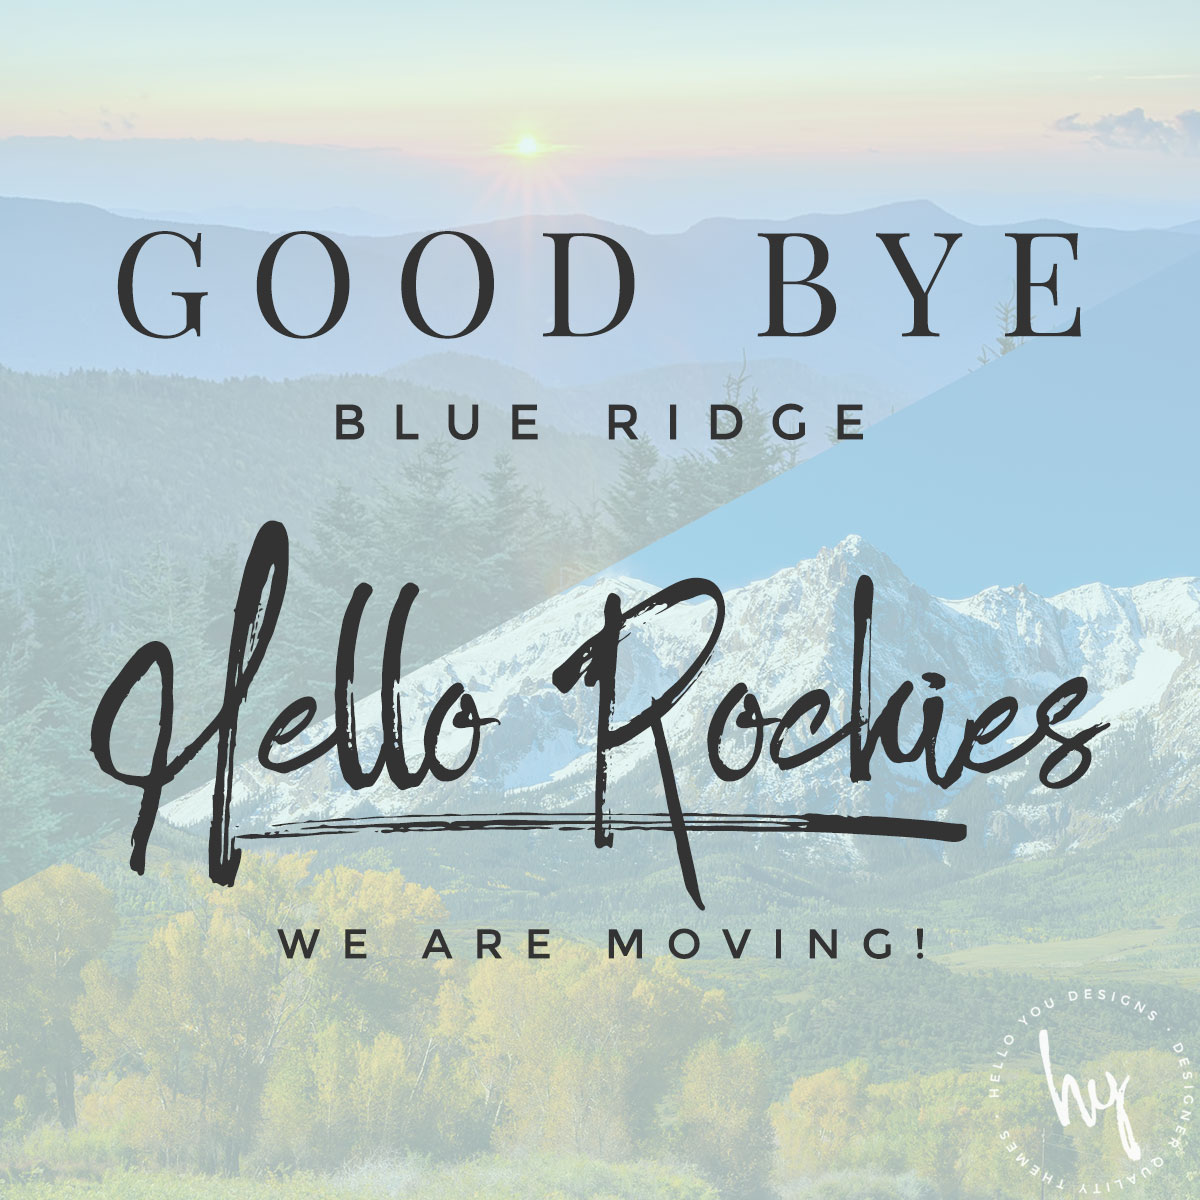 Good bye Blue Ridge